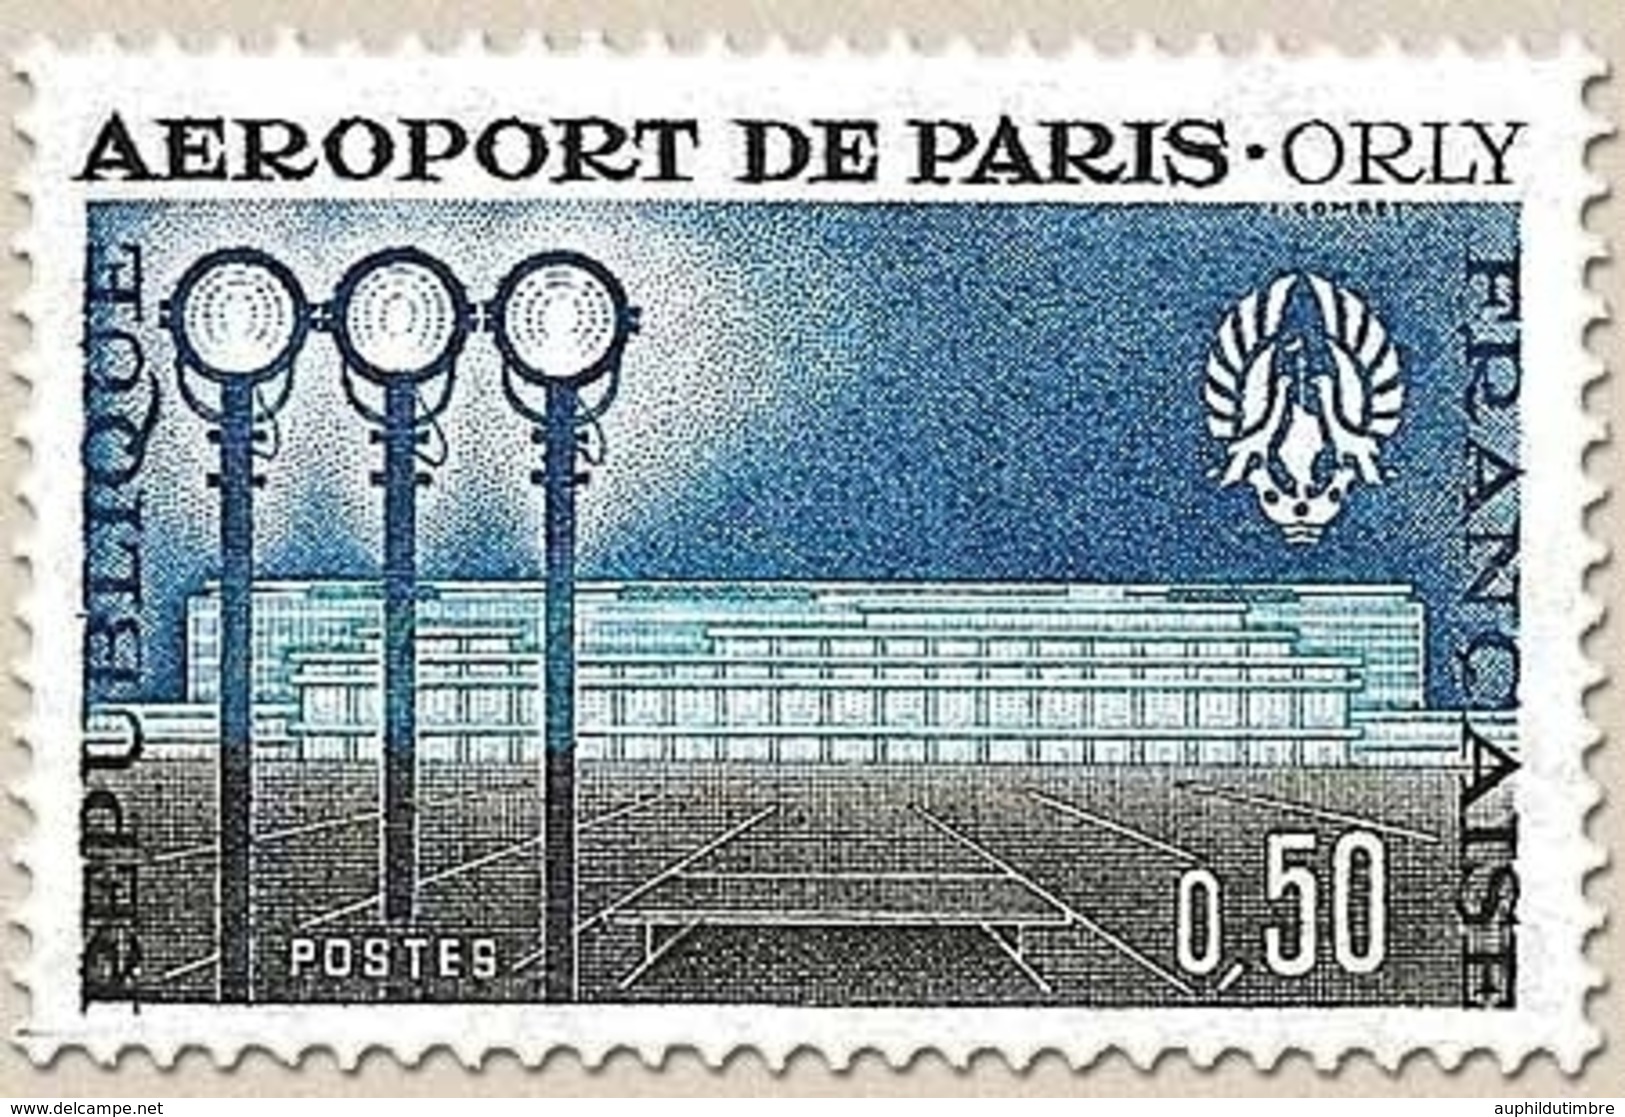 Inauguration De L'aéroport De Paris-Orly. Aérogare-Sud  50c. Bleu, Bleu Clair Et Sépia Y1283 - Neufs